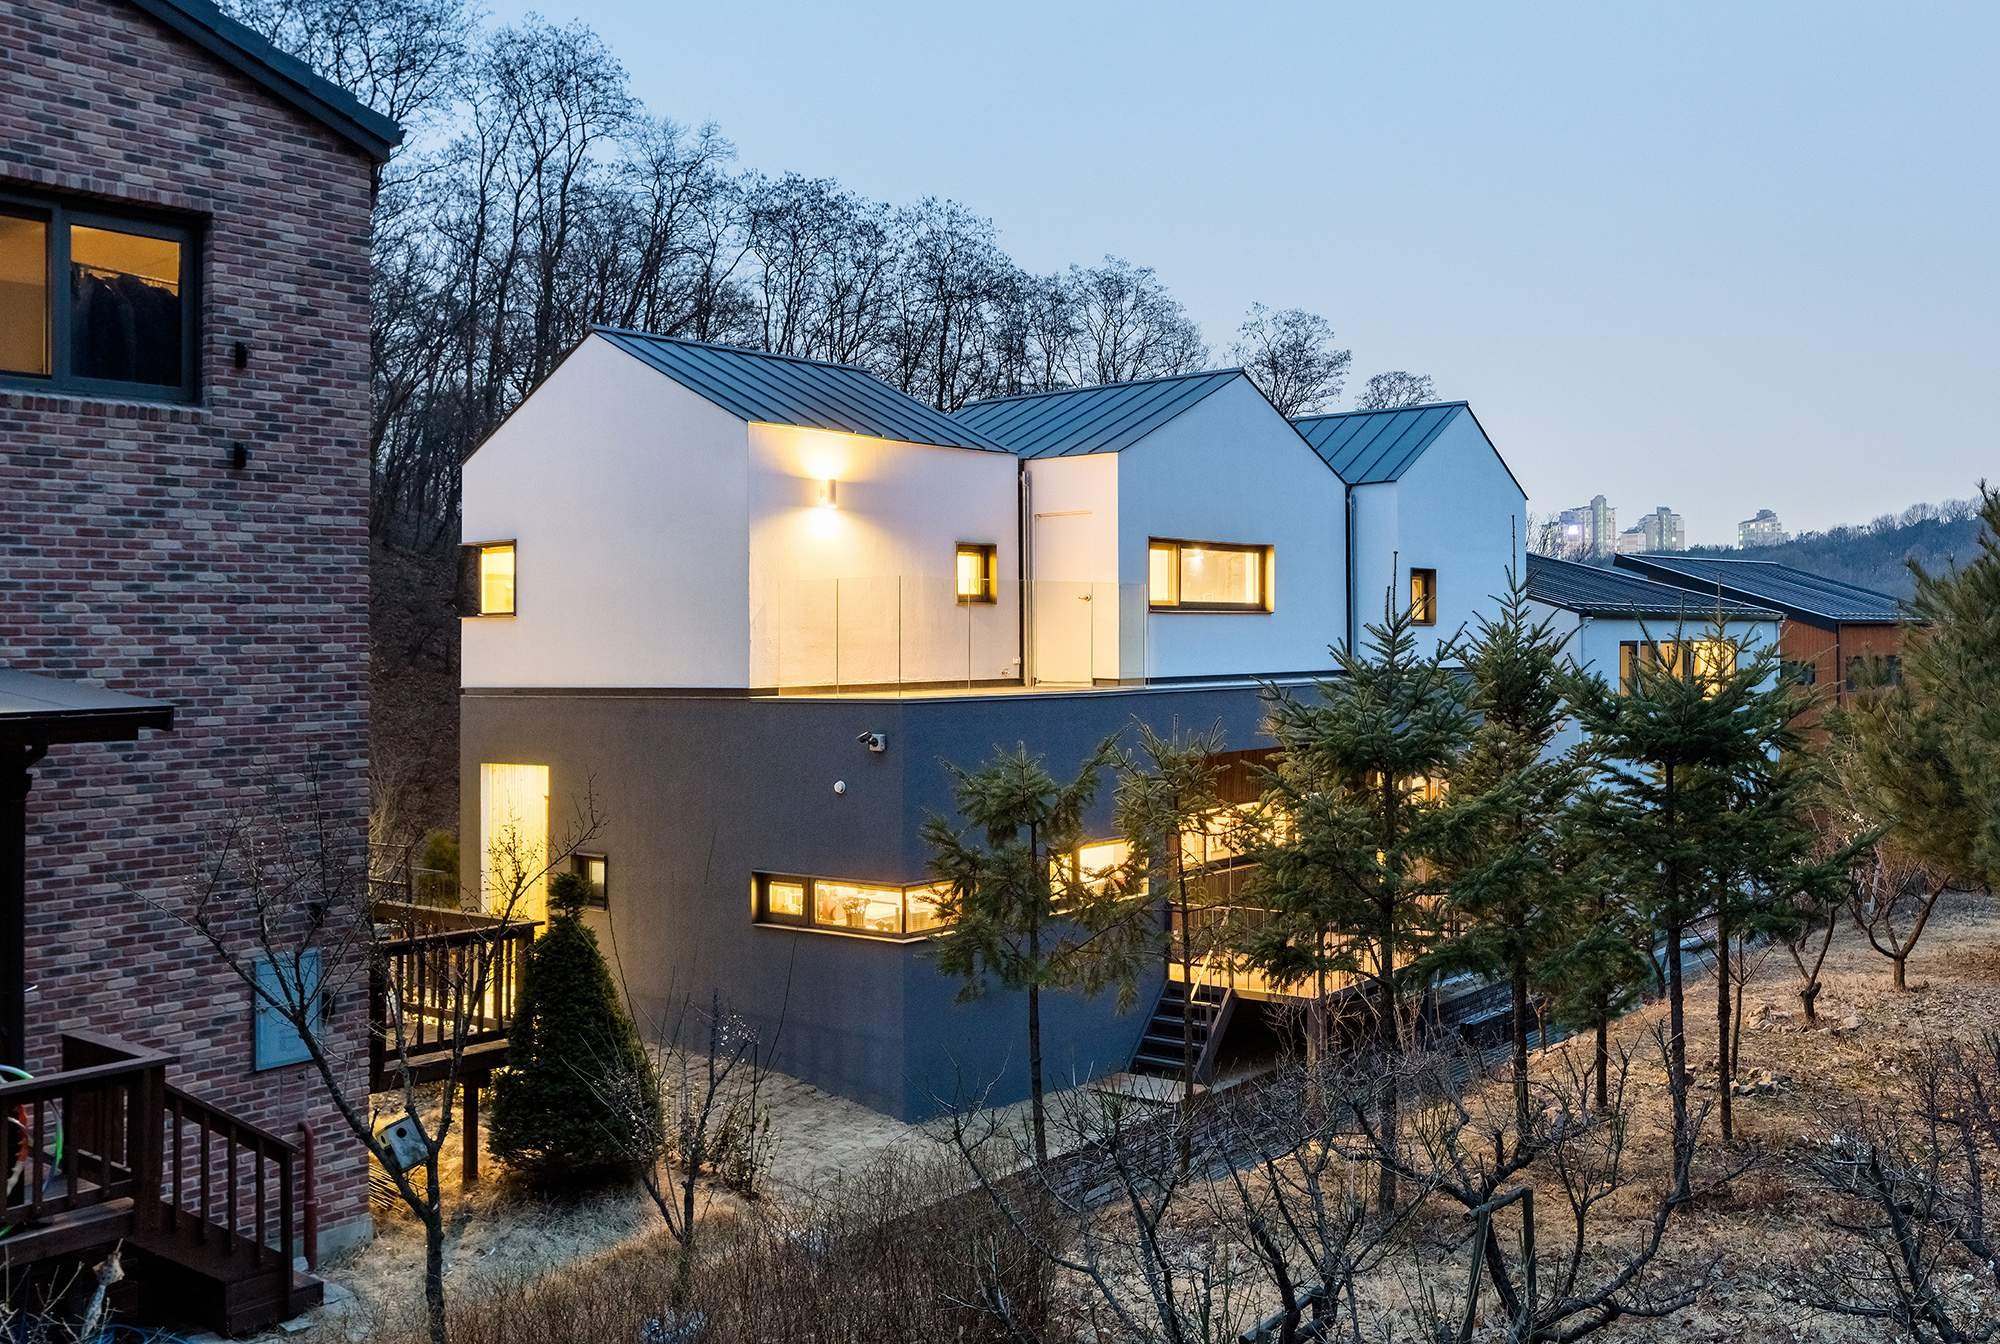 Домик на окраине текст. Дом с тремя крышами. Крыши в Корее. Южная Корея дачные поселки. Йонъин Южная Корея дом 103.